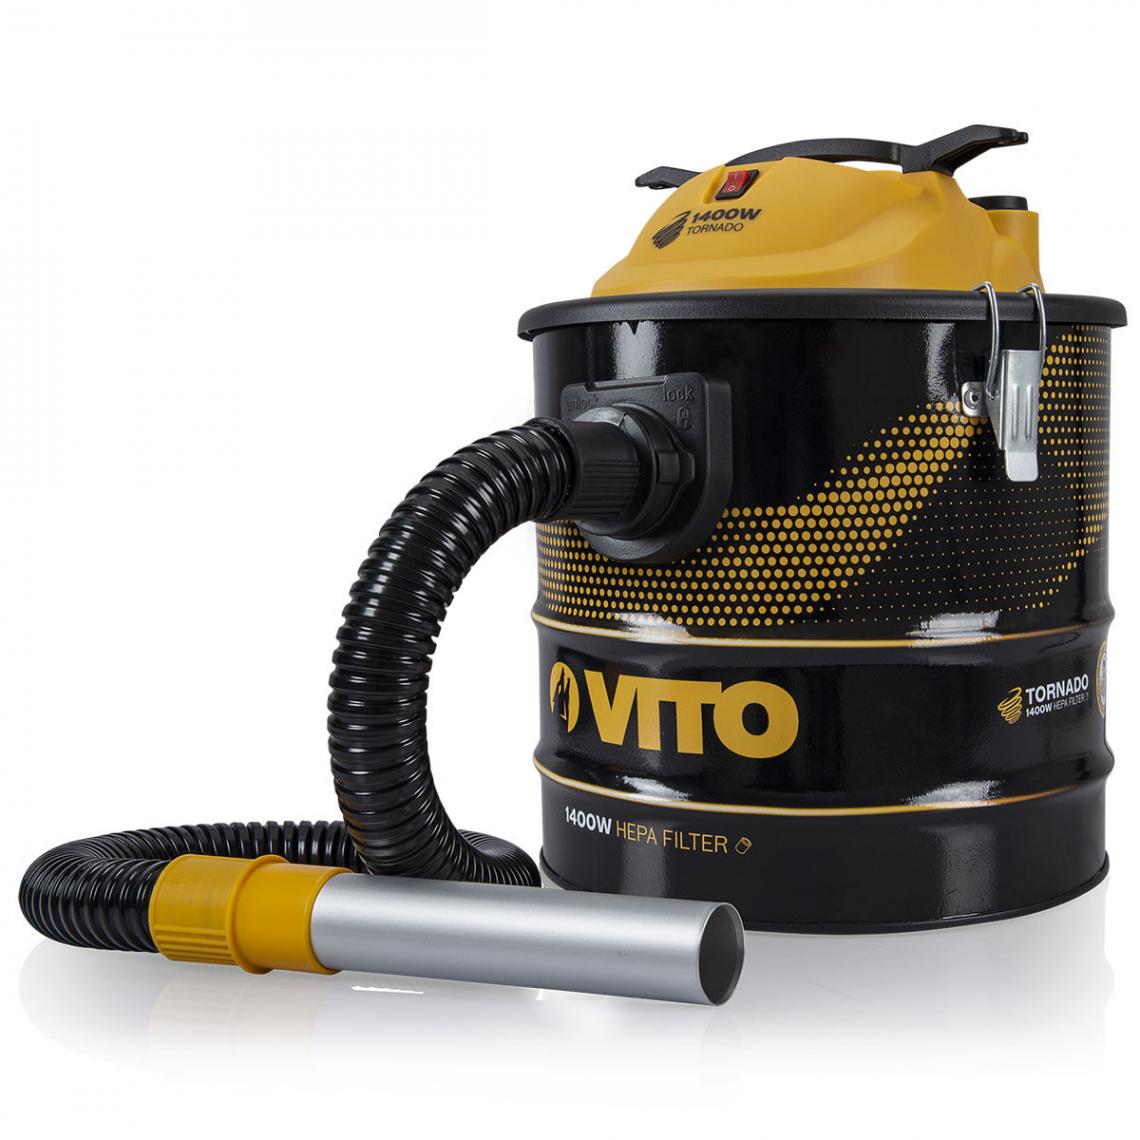 Vito Pro-Power - Aspirateur de cendres TORNADO 1400W 18L VITO Filtre HEPA Cendres Jusqu'à 50°C Souffleur Système Auto nettoyage du filtre - Aspirateur traîneau